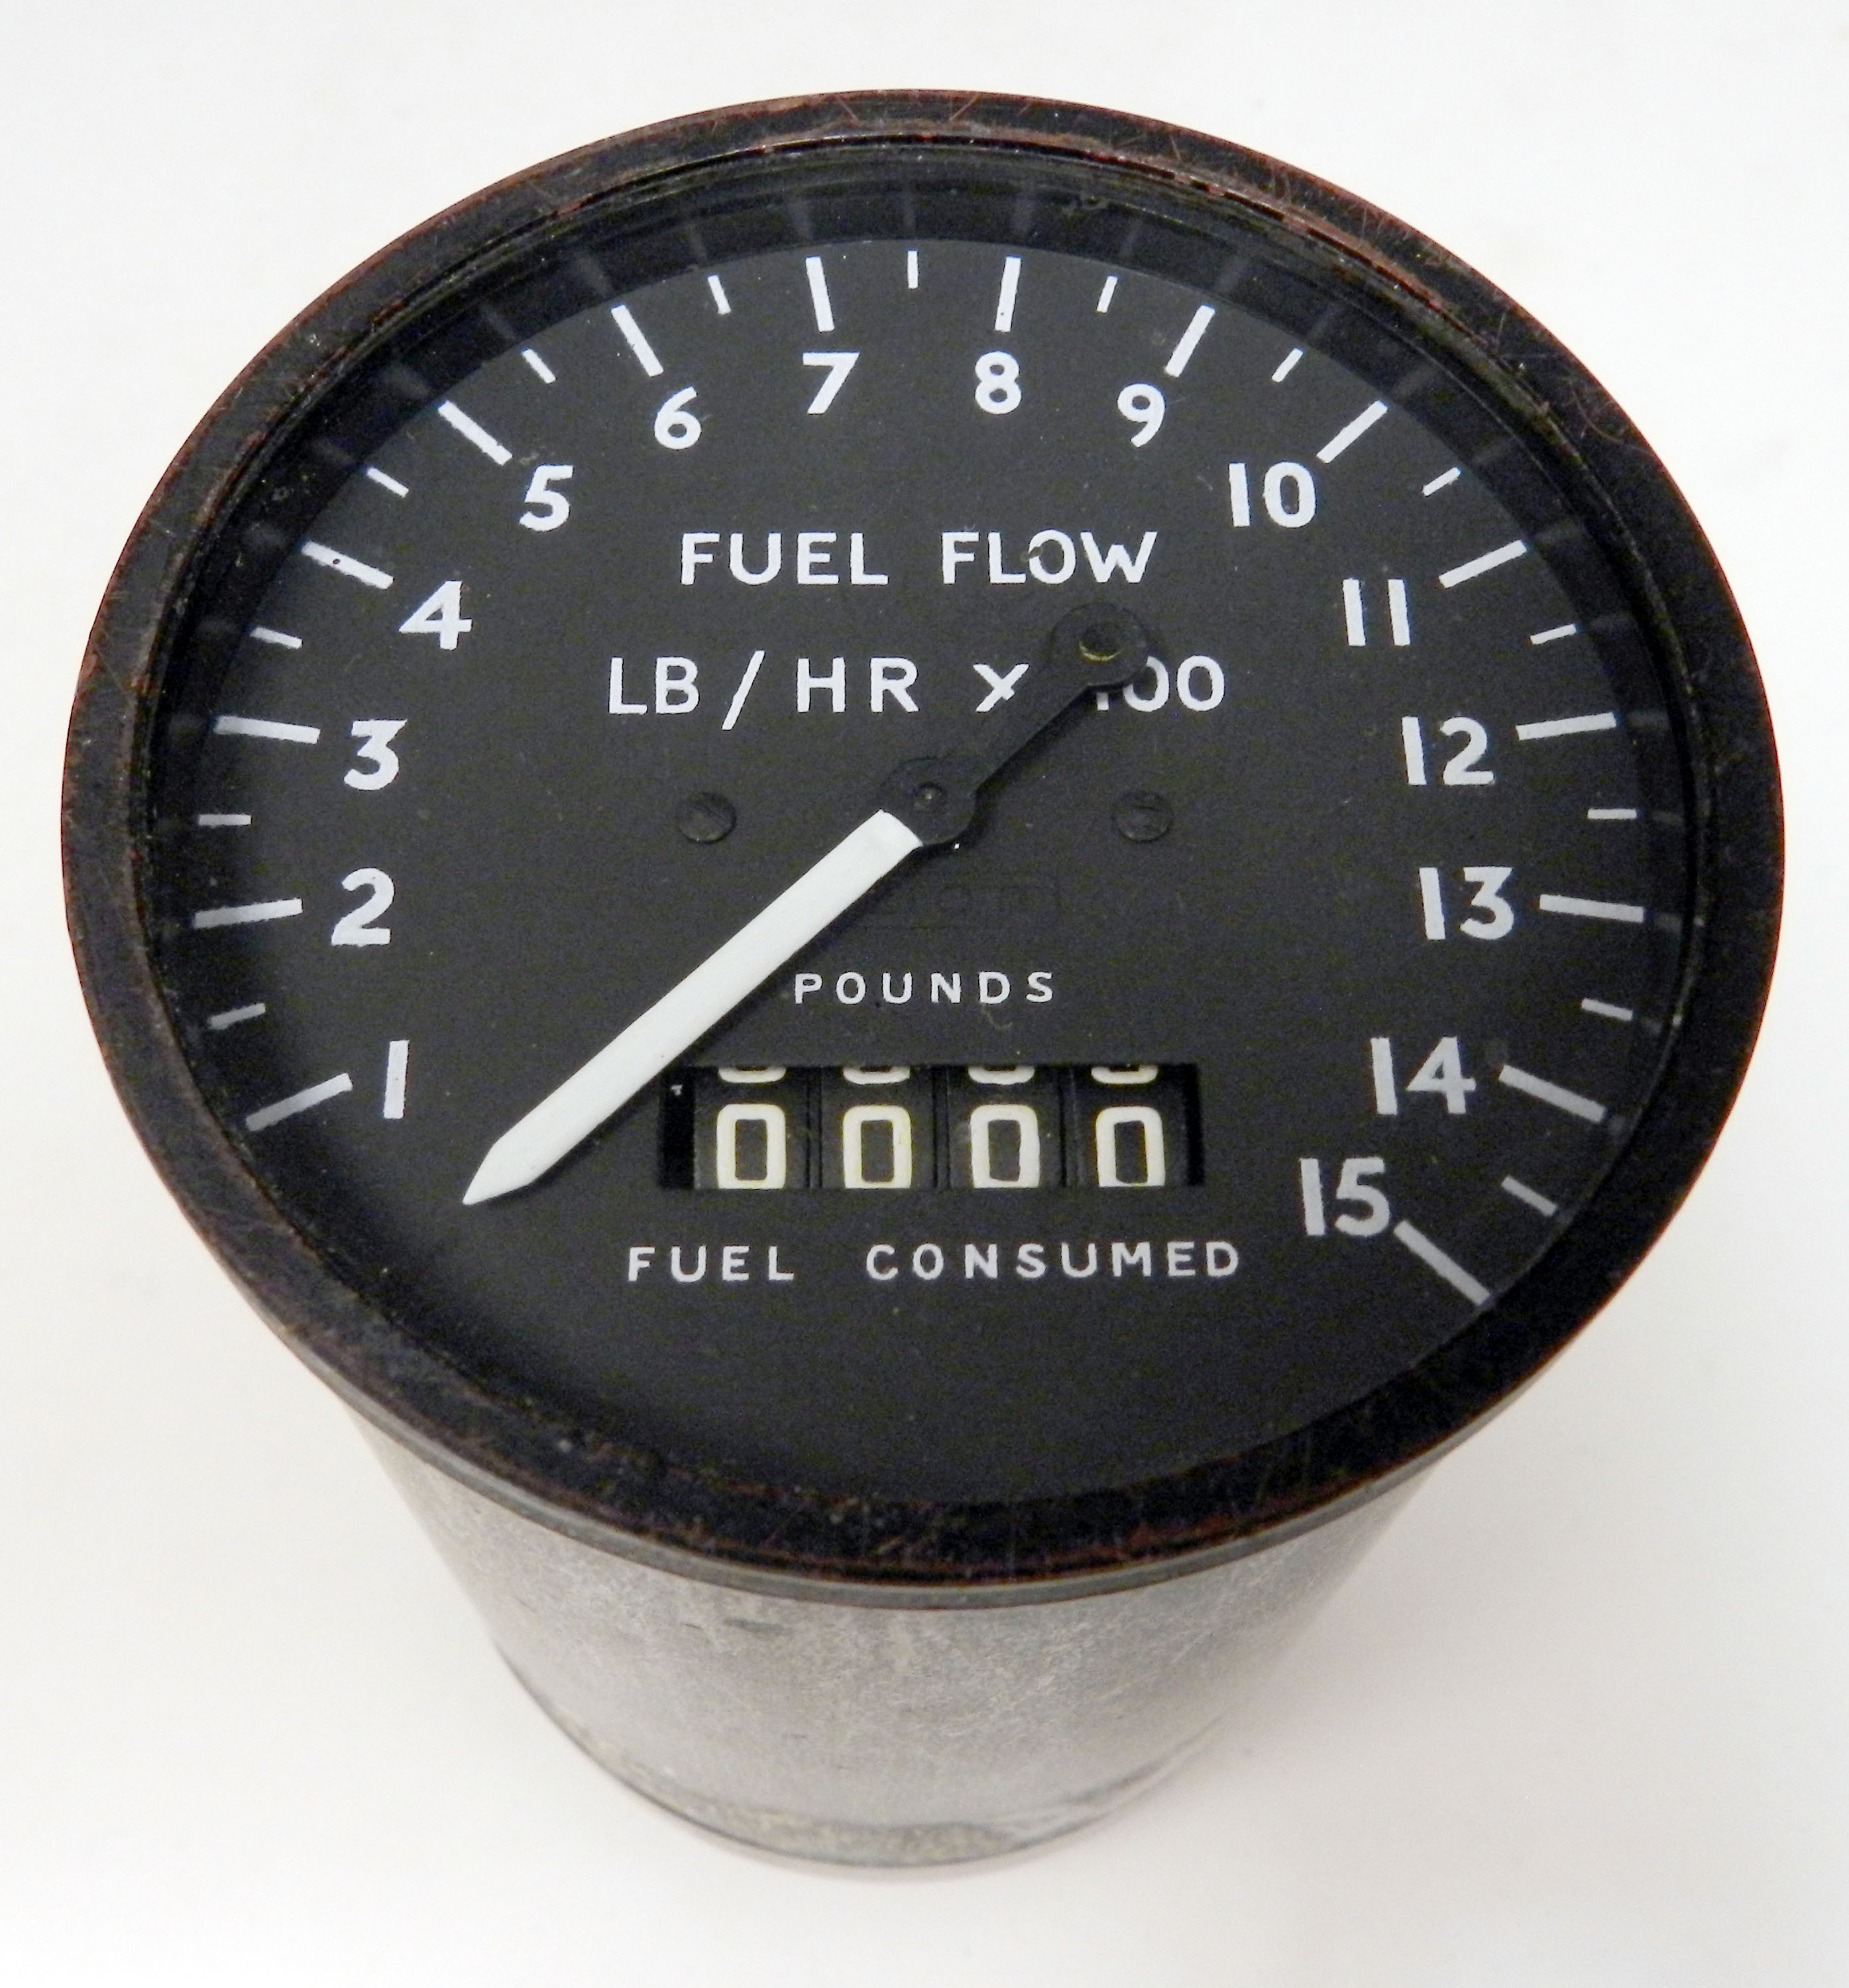 fuel system indicators